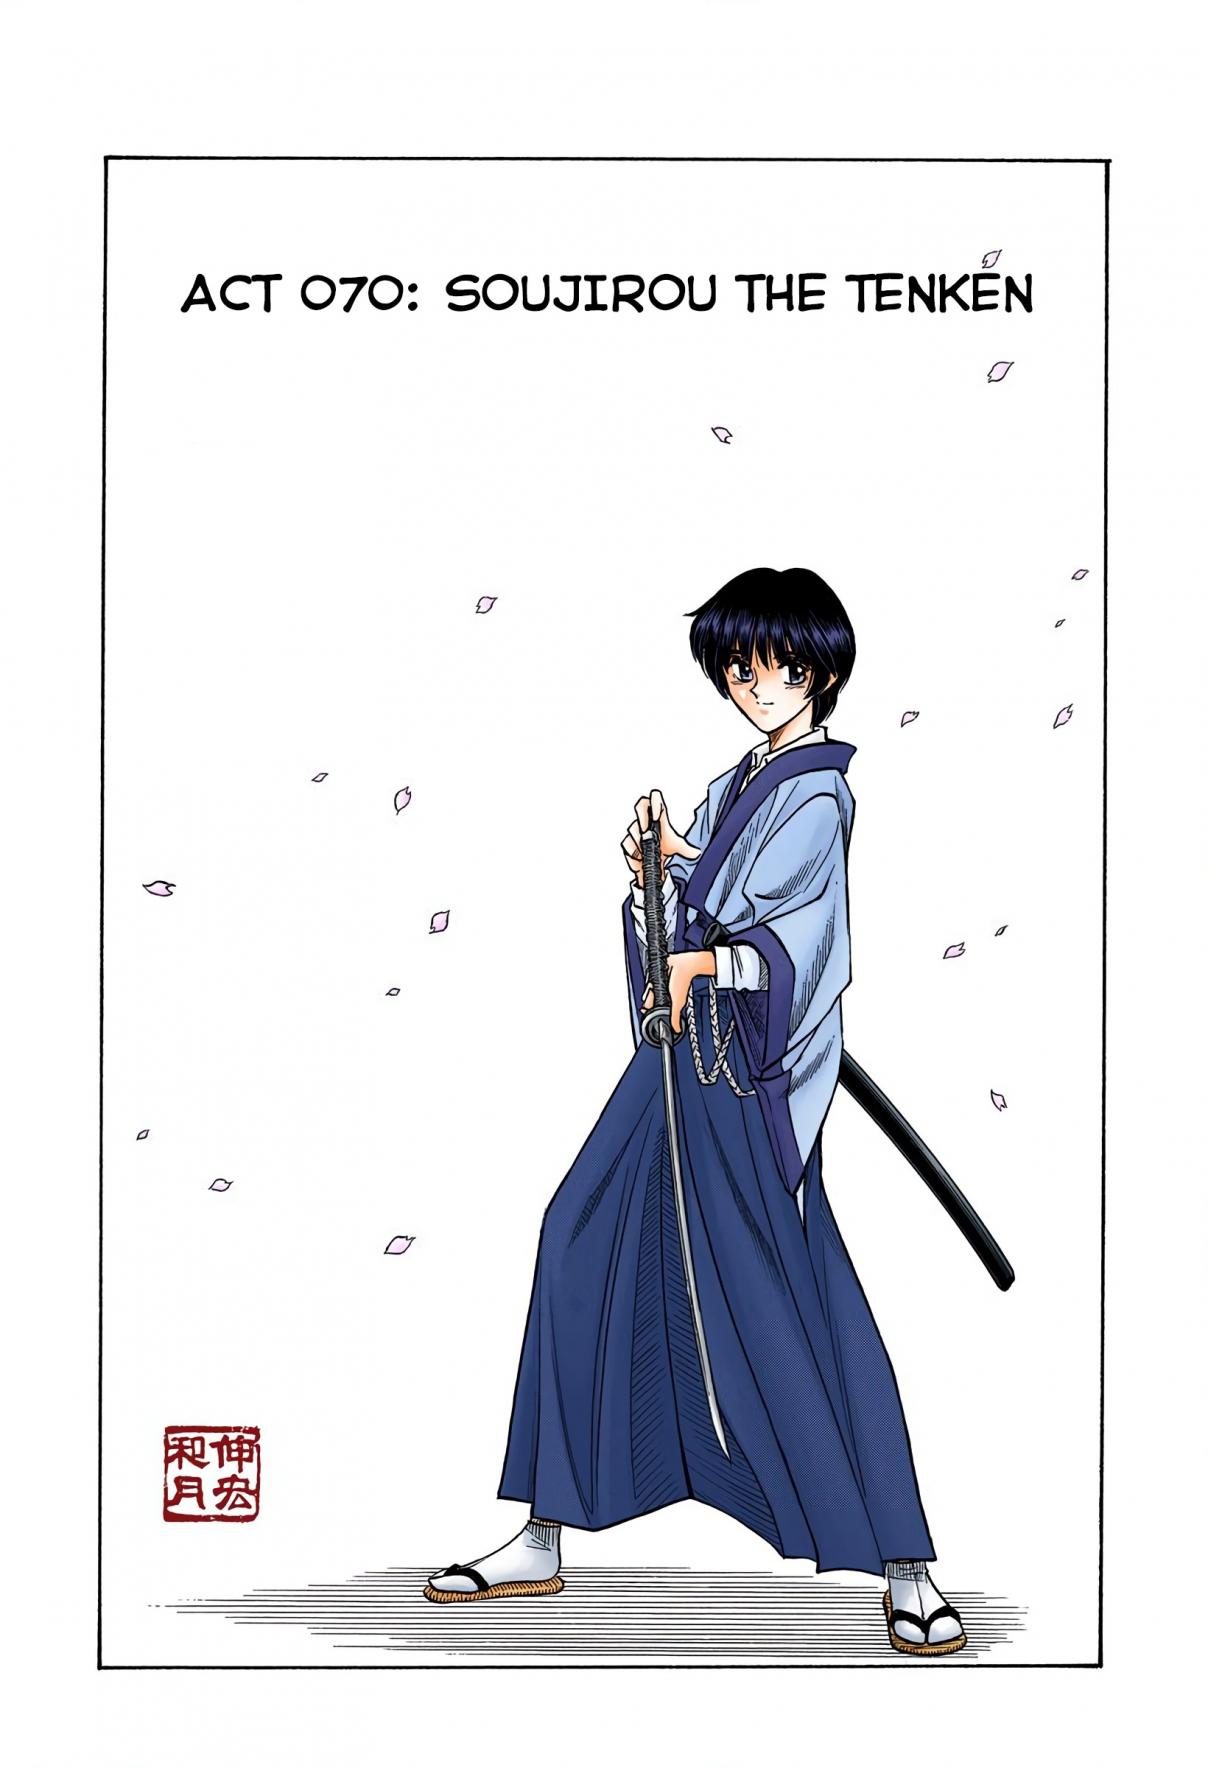 Rurouni Kenshin Digital Colored Comics Vol. 9 Ch. 70 Soujirou the Prodigy